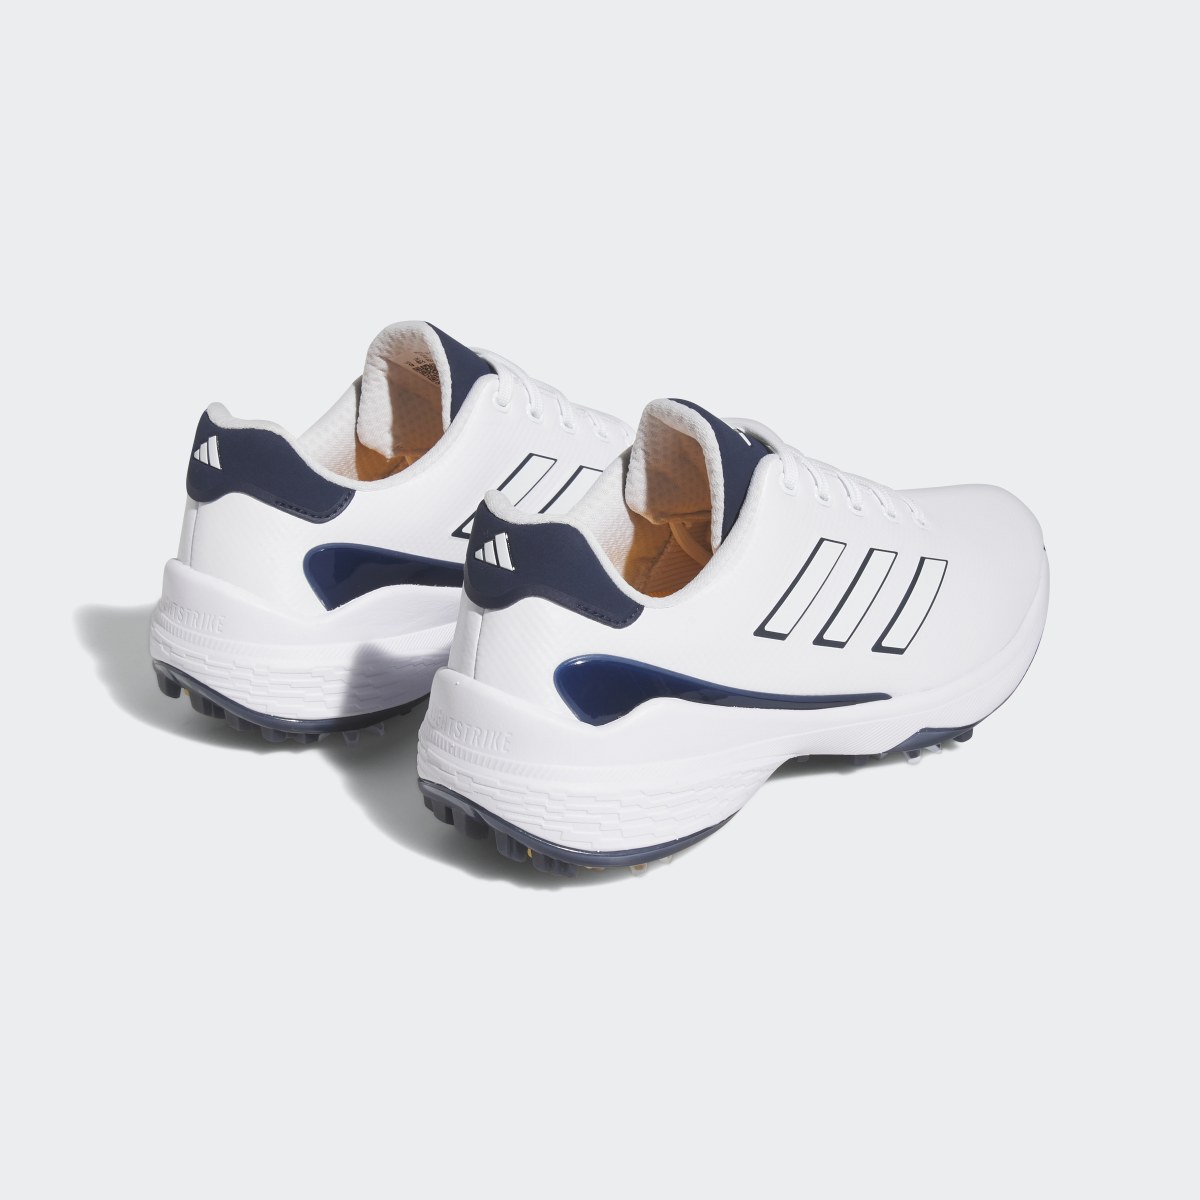 Adidas ZG23 Golf Shoes. 9